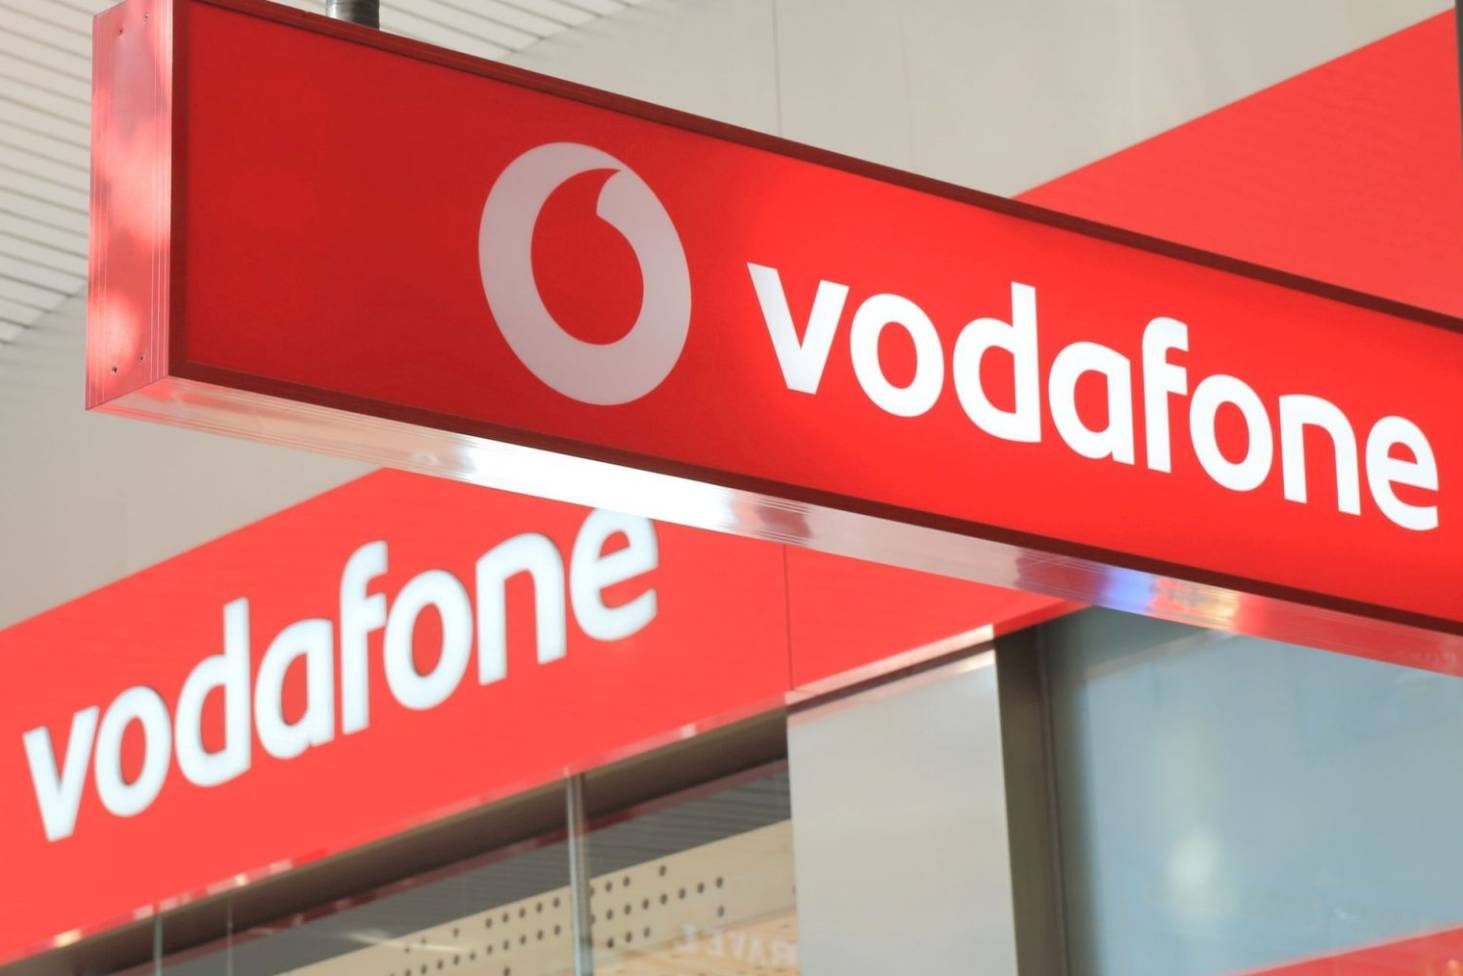 اسهل طريقة لمعرفة رصيد فودافون 2022 Vodafone – كود معرفة رصيد فودافون